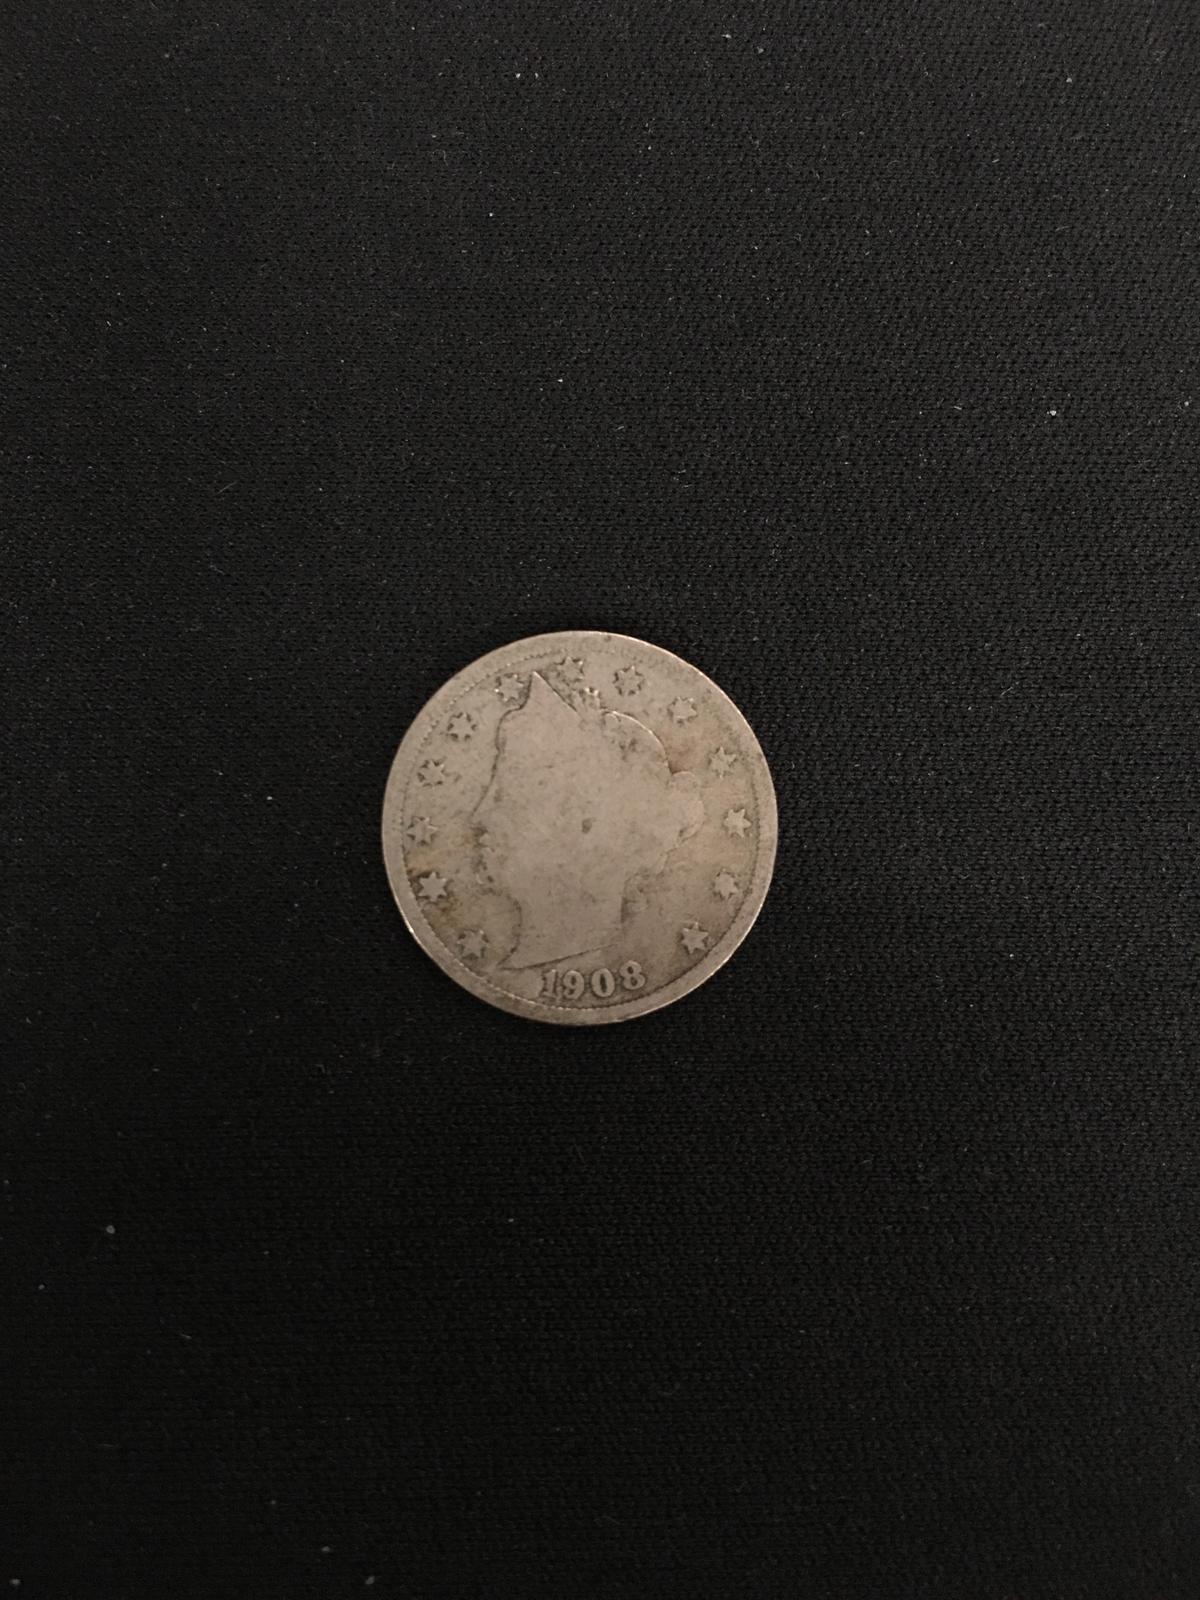 1908 United States Liberty V Nickel